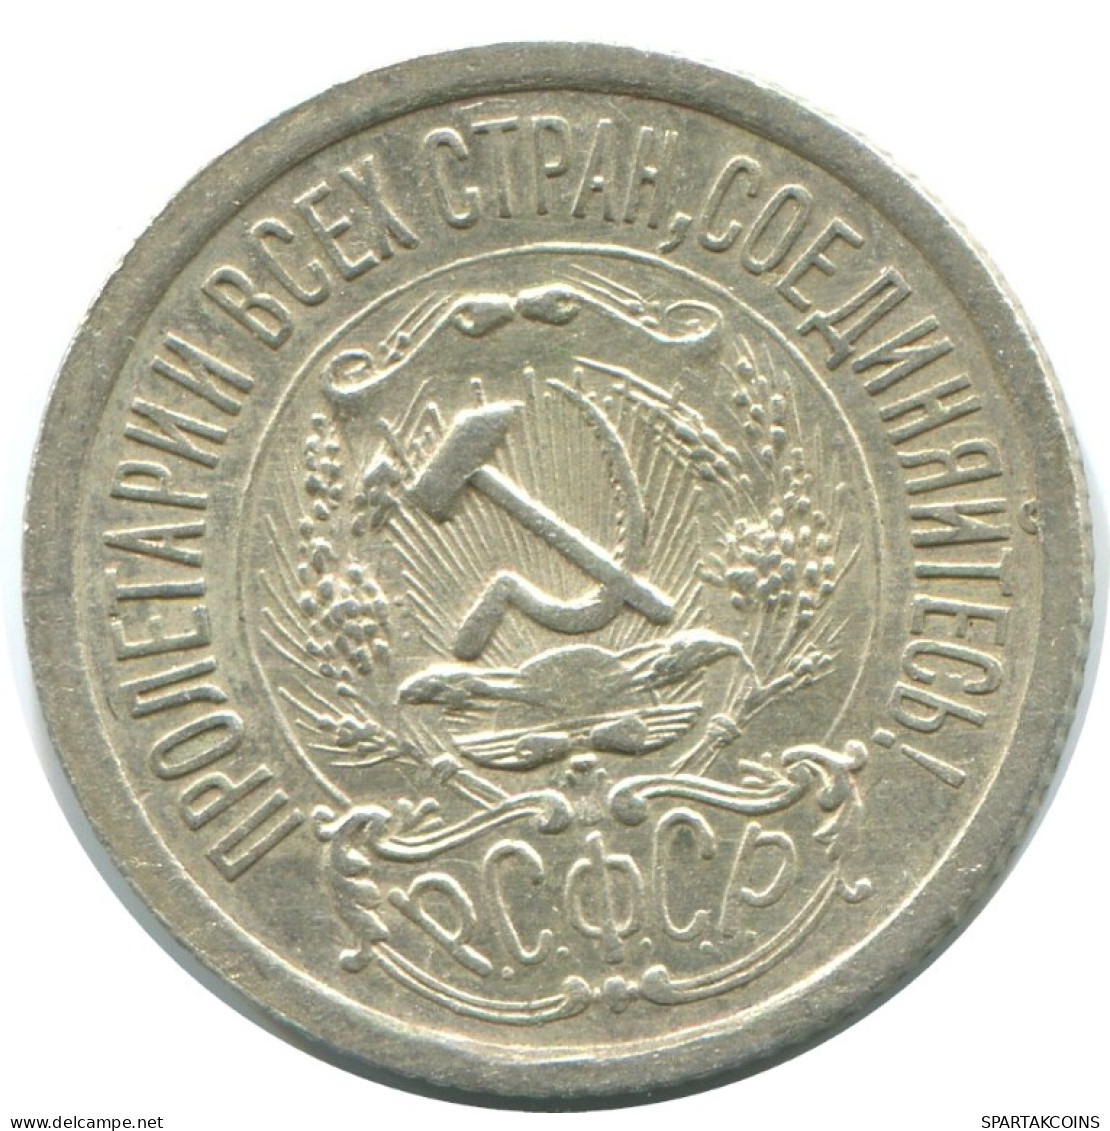 15 KOPEKS 1923 RUSSIA RSFSR SILVER Coin HIGH GRADE #AF046.4.U.A - Russland